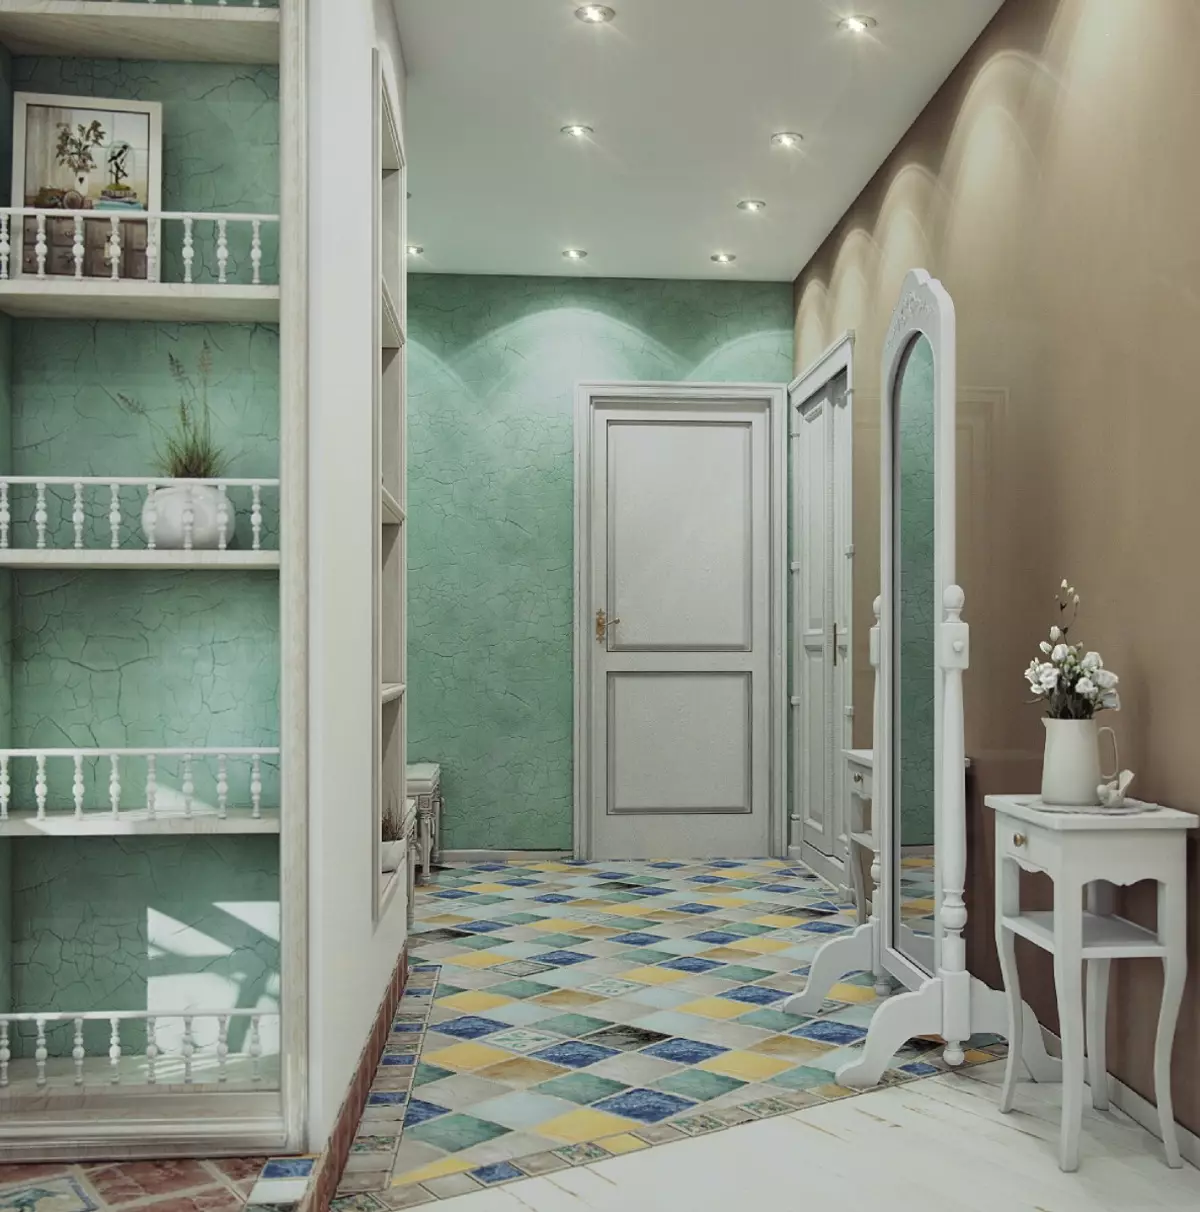 Hala ve stylu Provence (74 fotek): Interiér koridoru v bílých a jiných barvách, návrh skříně a dalšího nábytku ve stylu Provence 9279_20